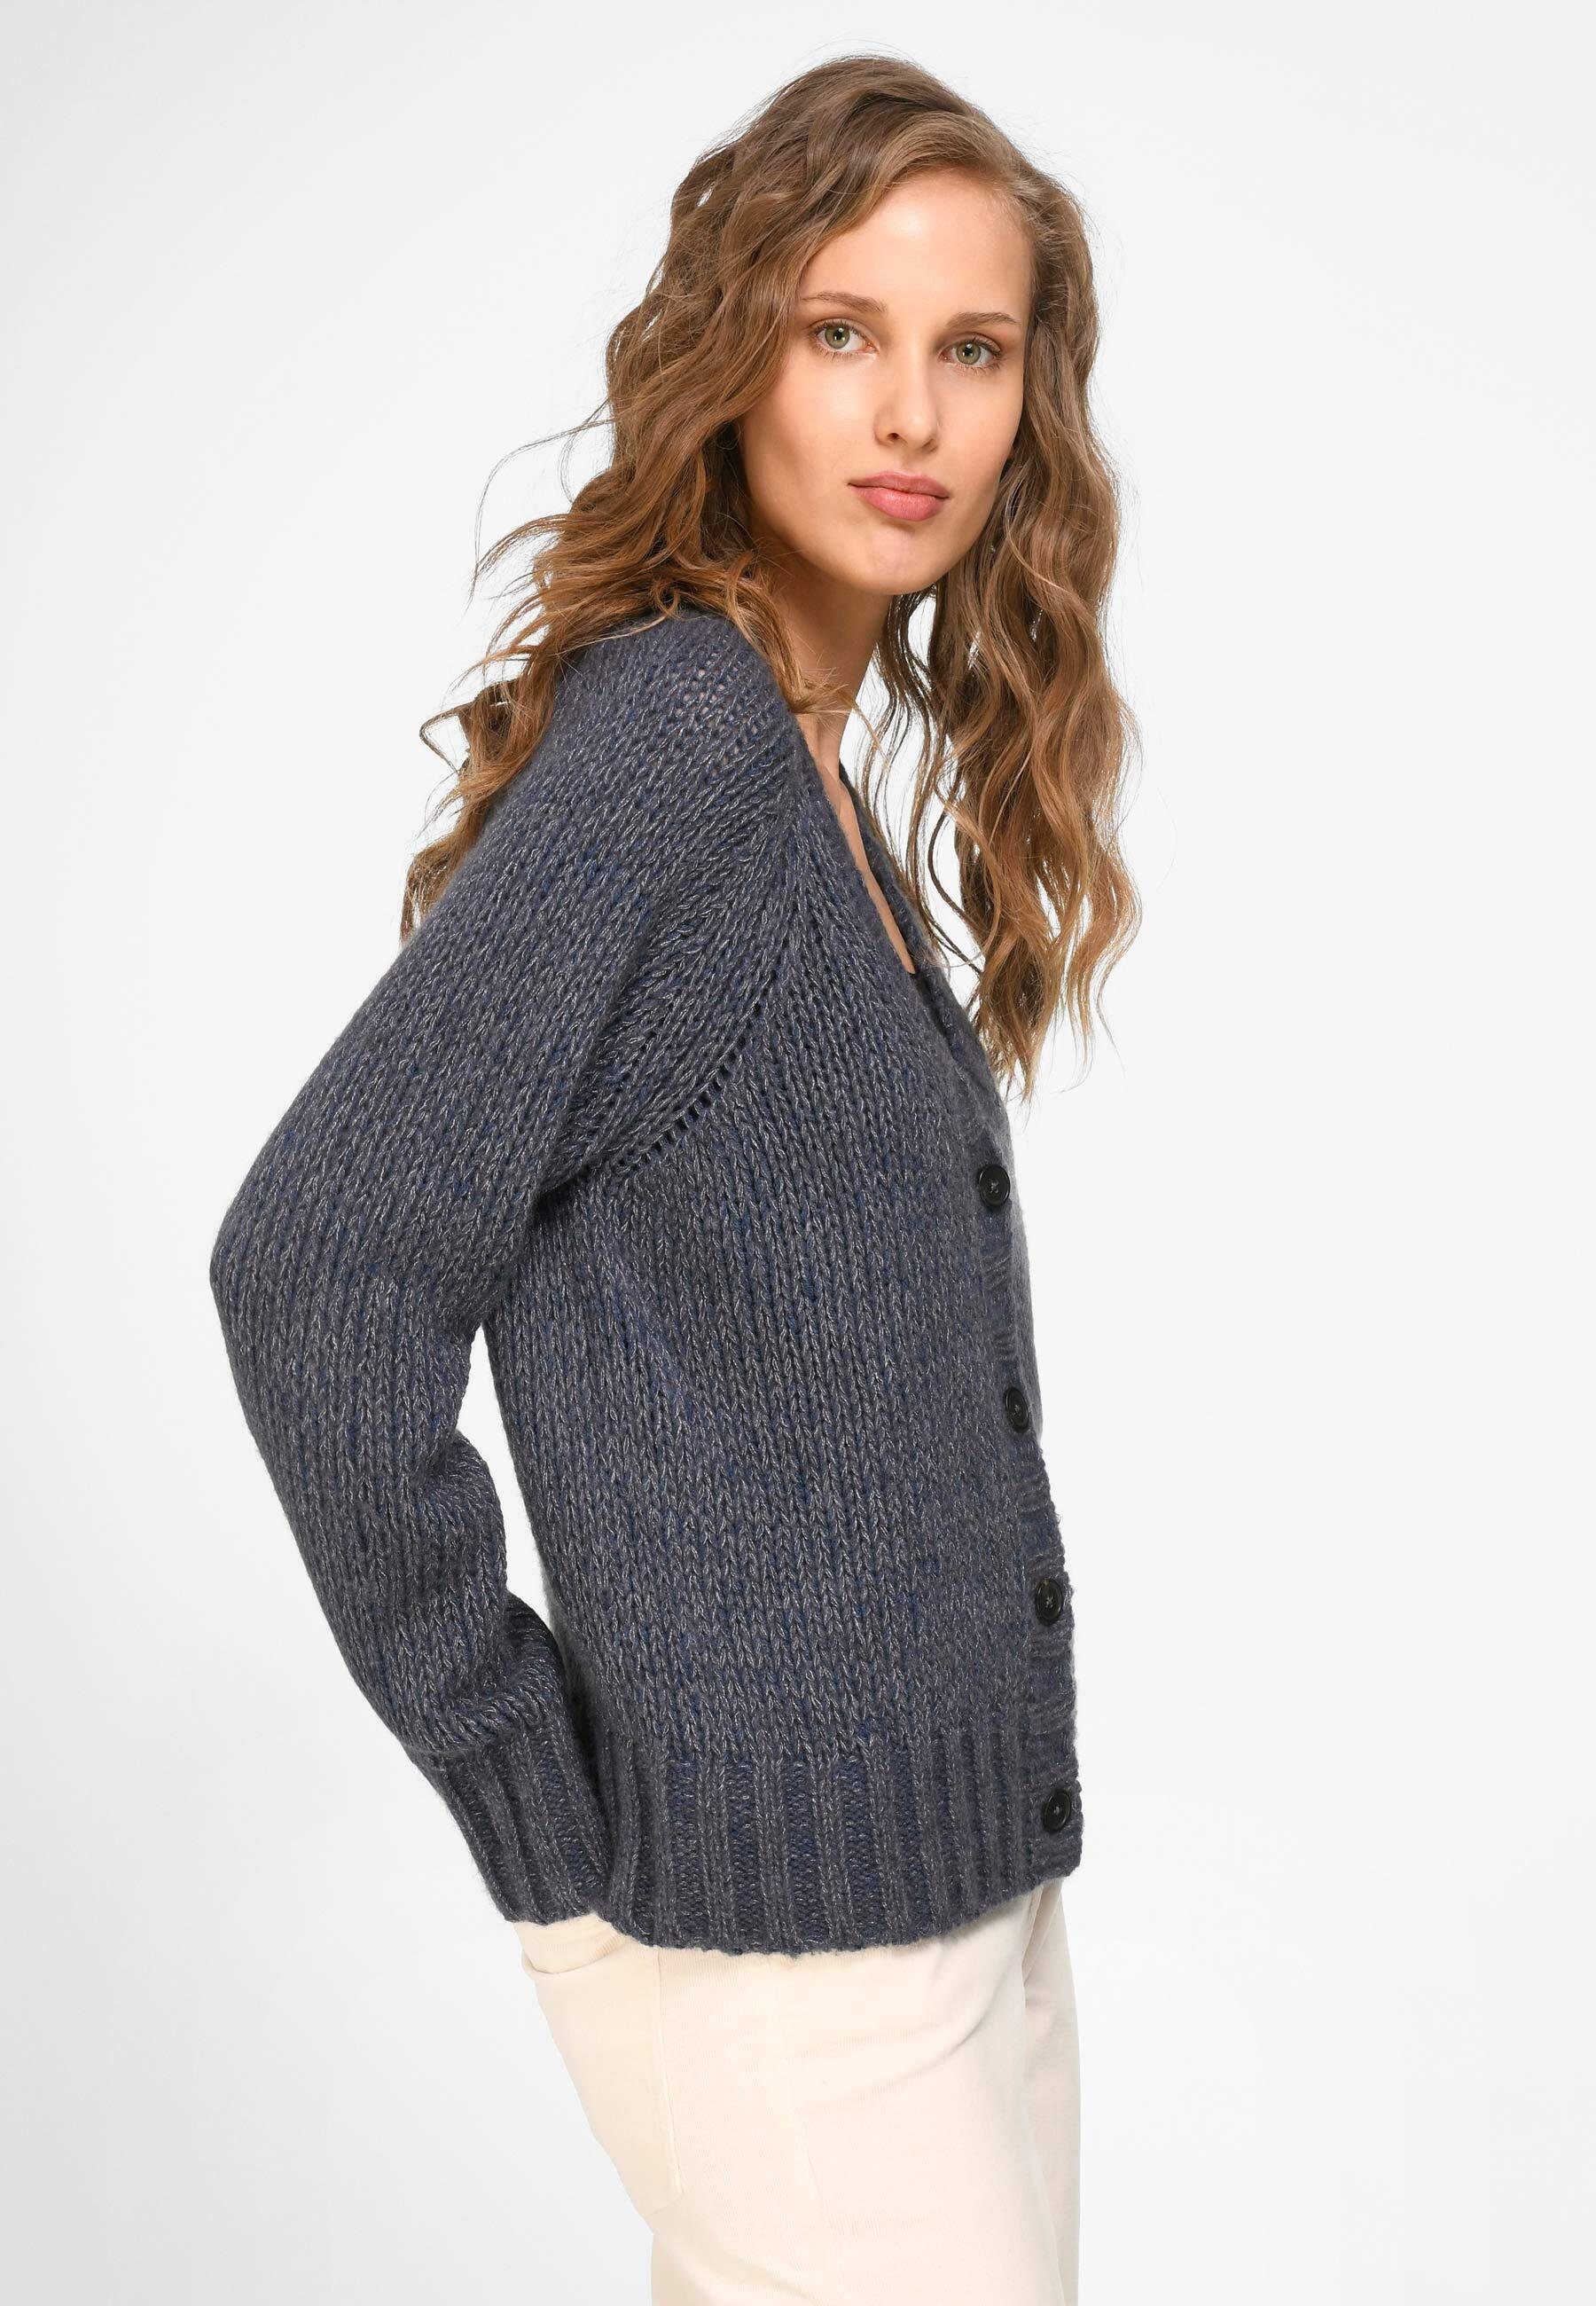 Strickjacke wool jeansblau-melange include